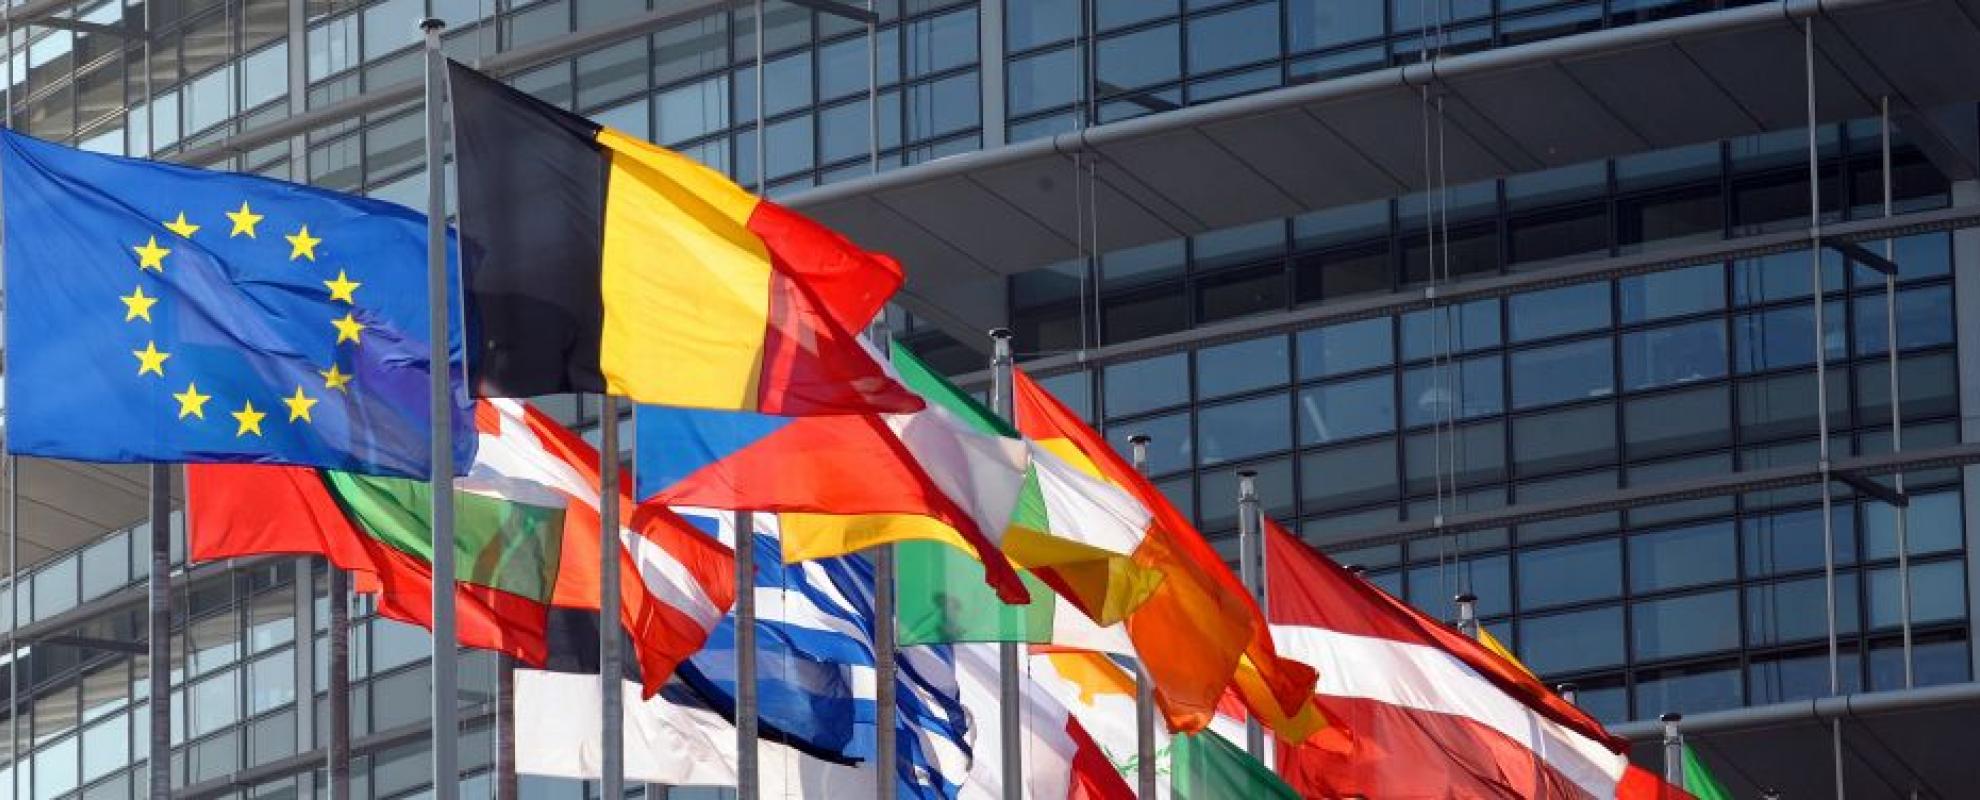 EU-parliament-flags